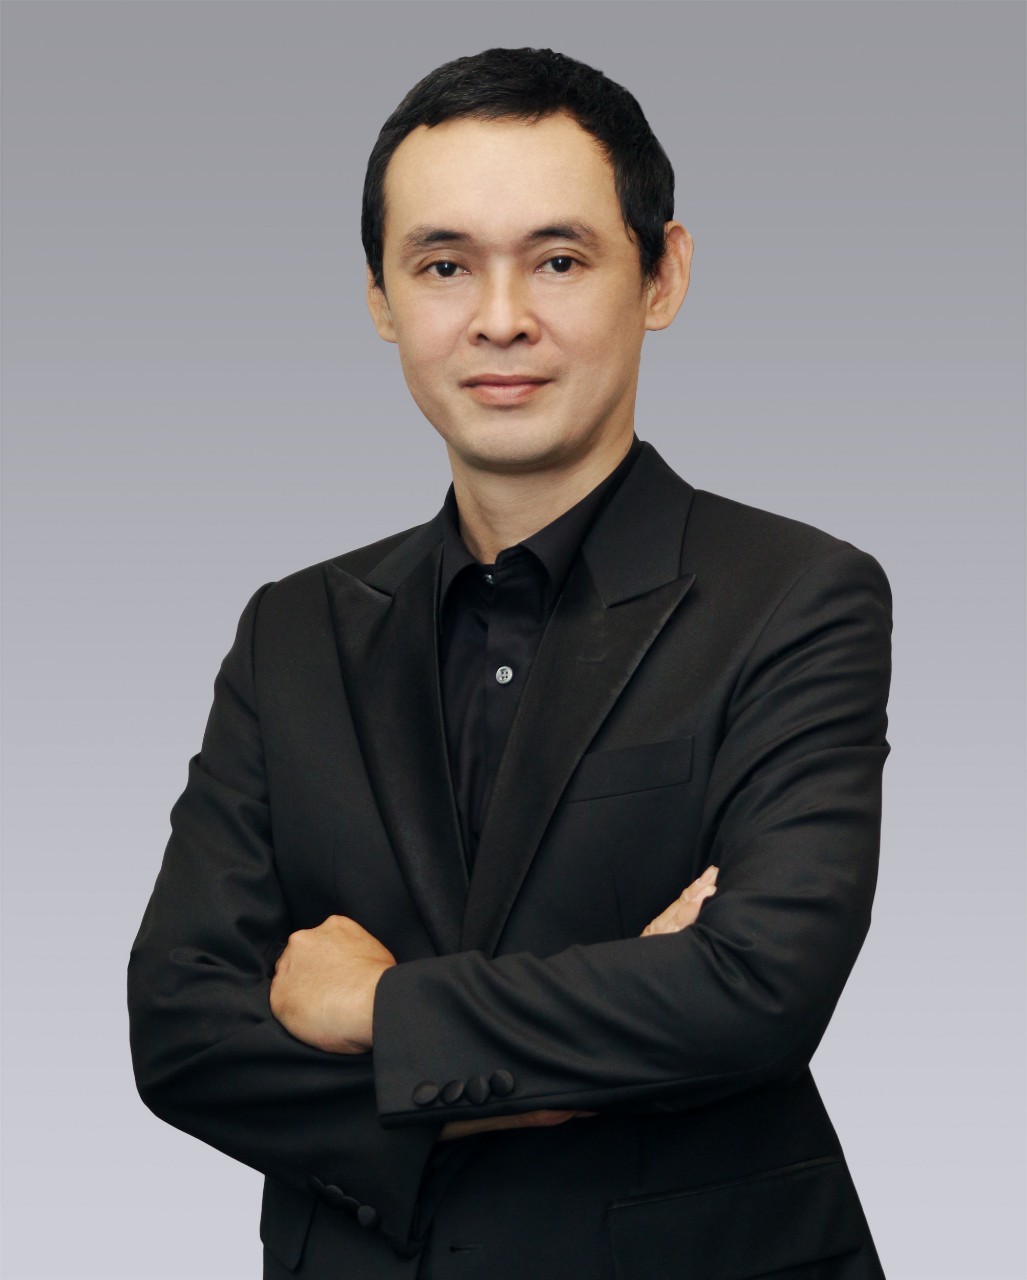 
Ông Vũ Minh Chí, Quản lý cấp cao, Dịch vụ Công nghiệp, Colliers (Việt Nam)
